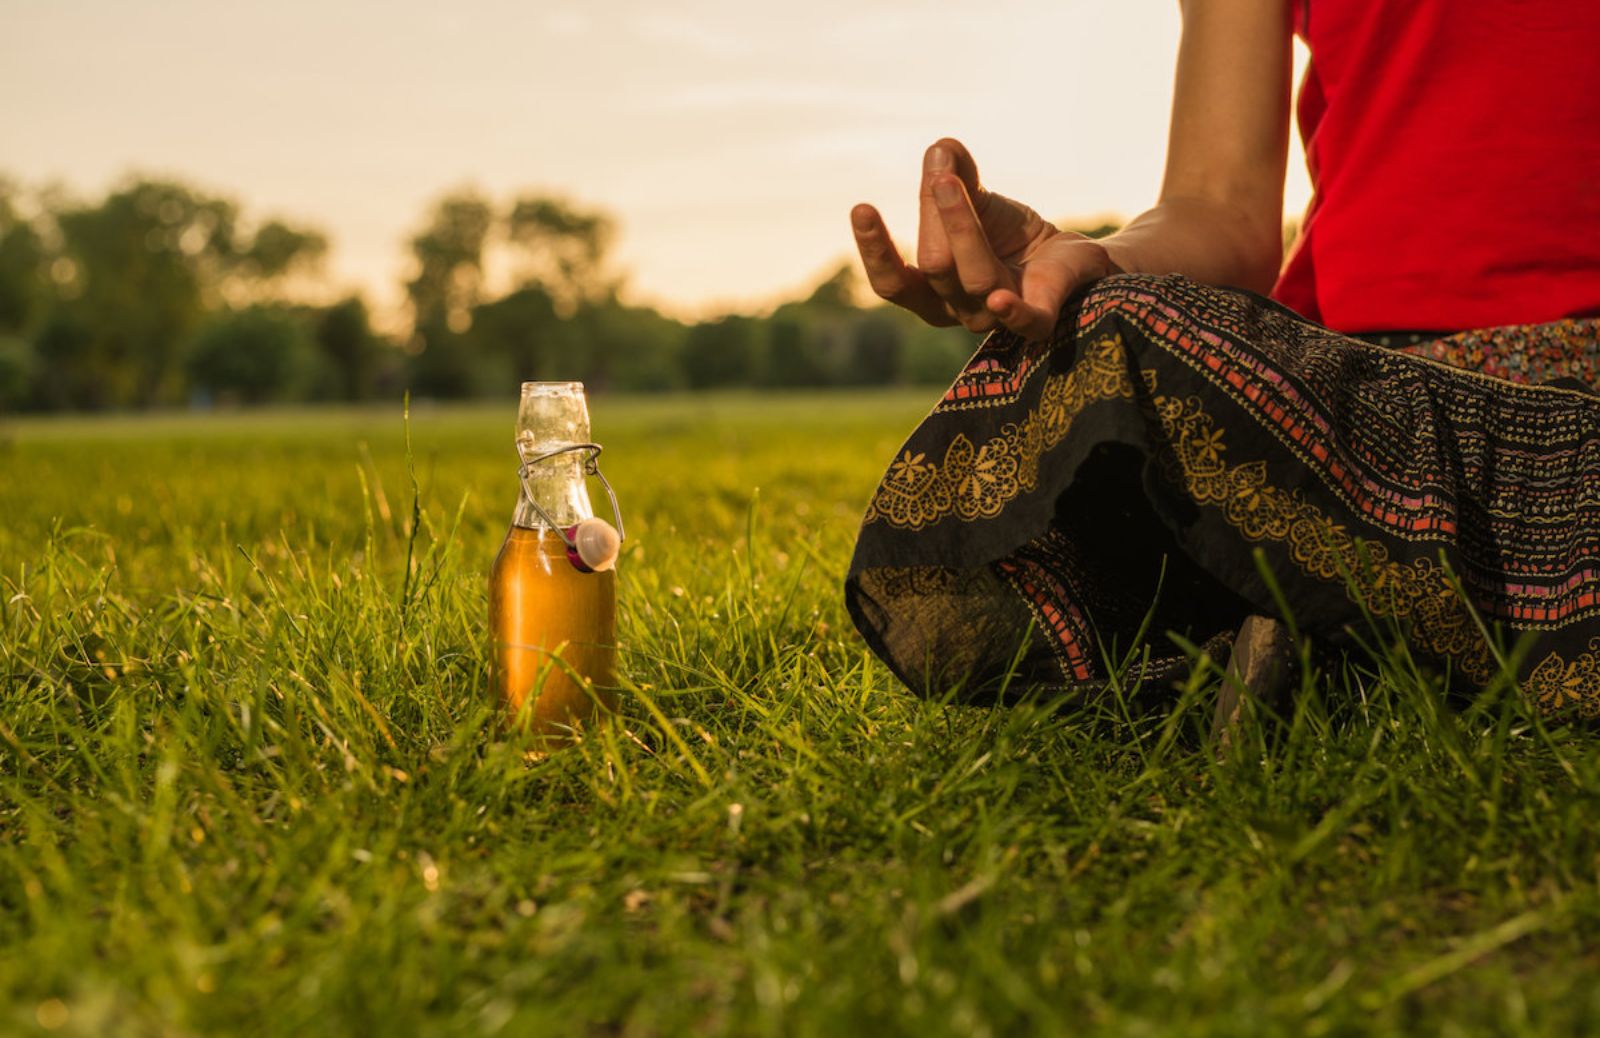 La migliore disciplina da praticare questo autunno è il beer yoga